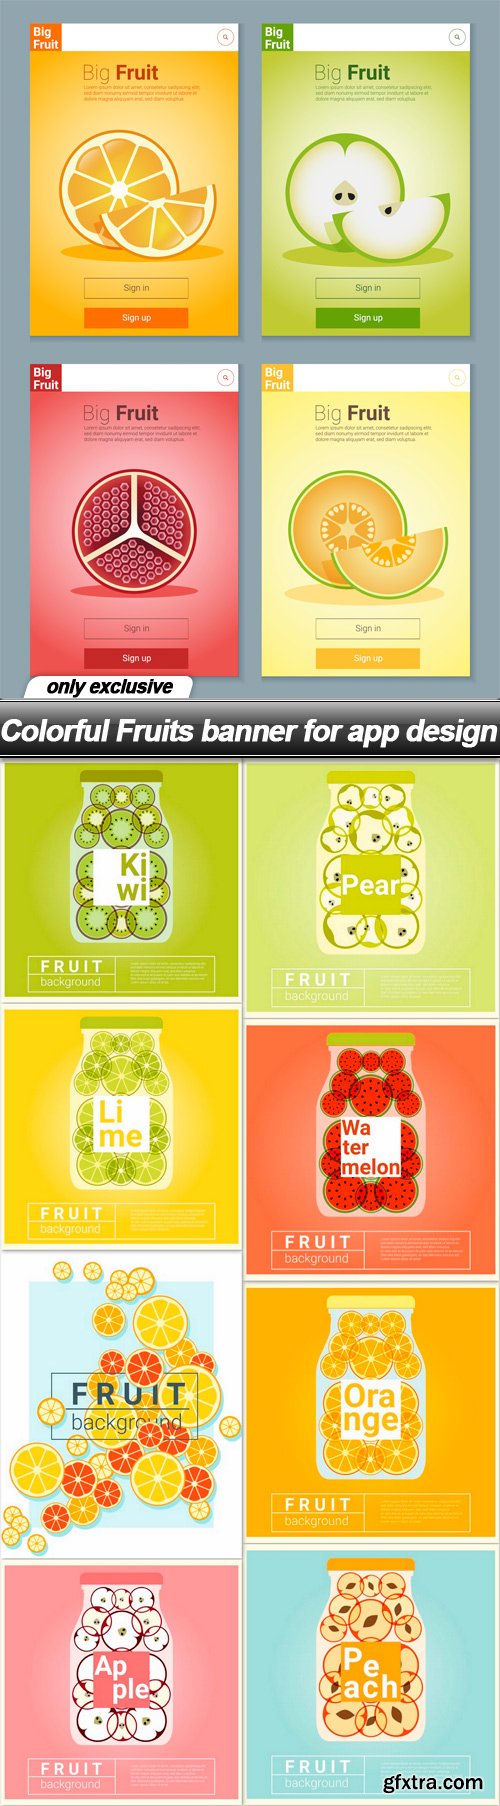 Colorful Fruits banner for app design - 16 EPS